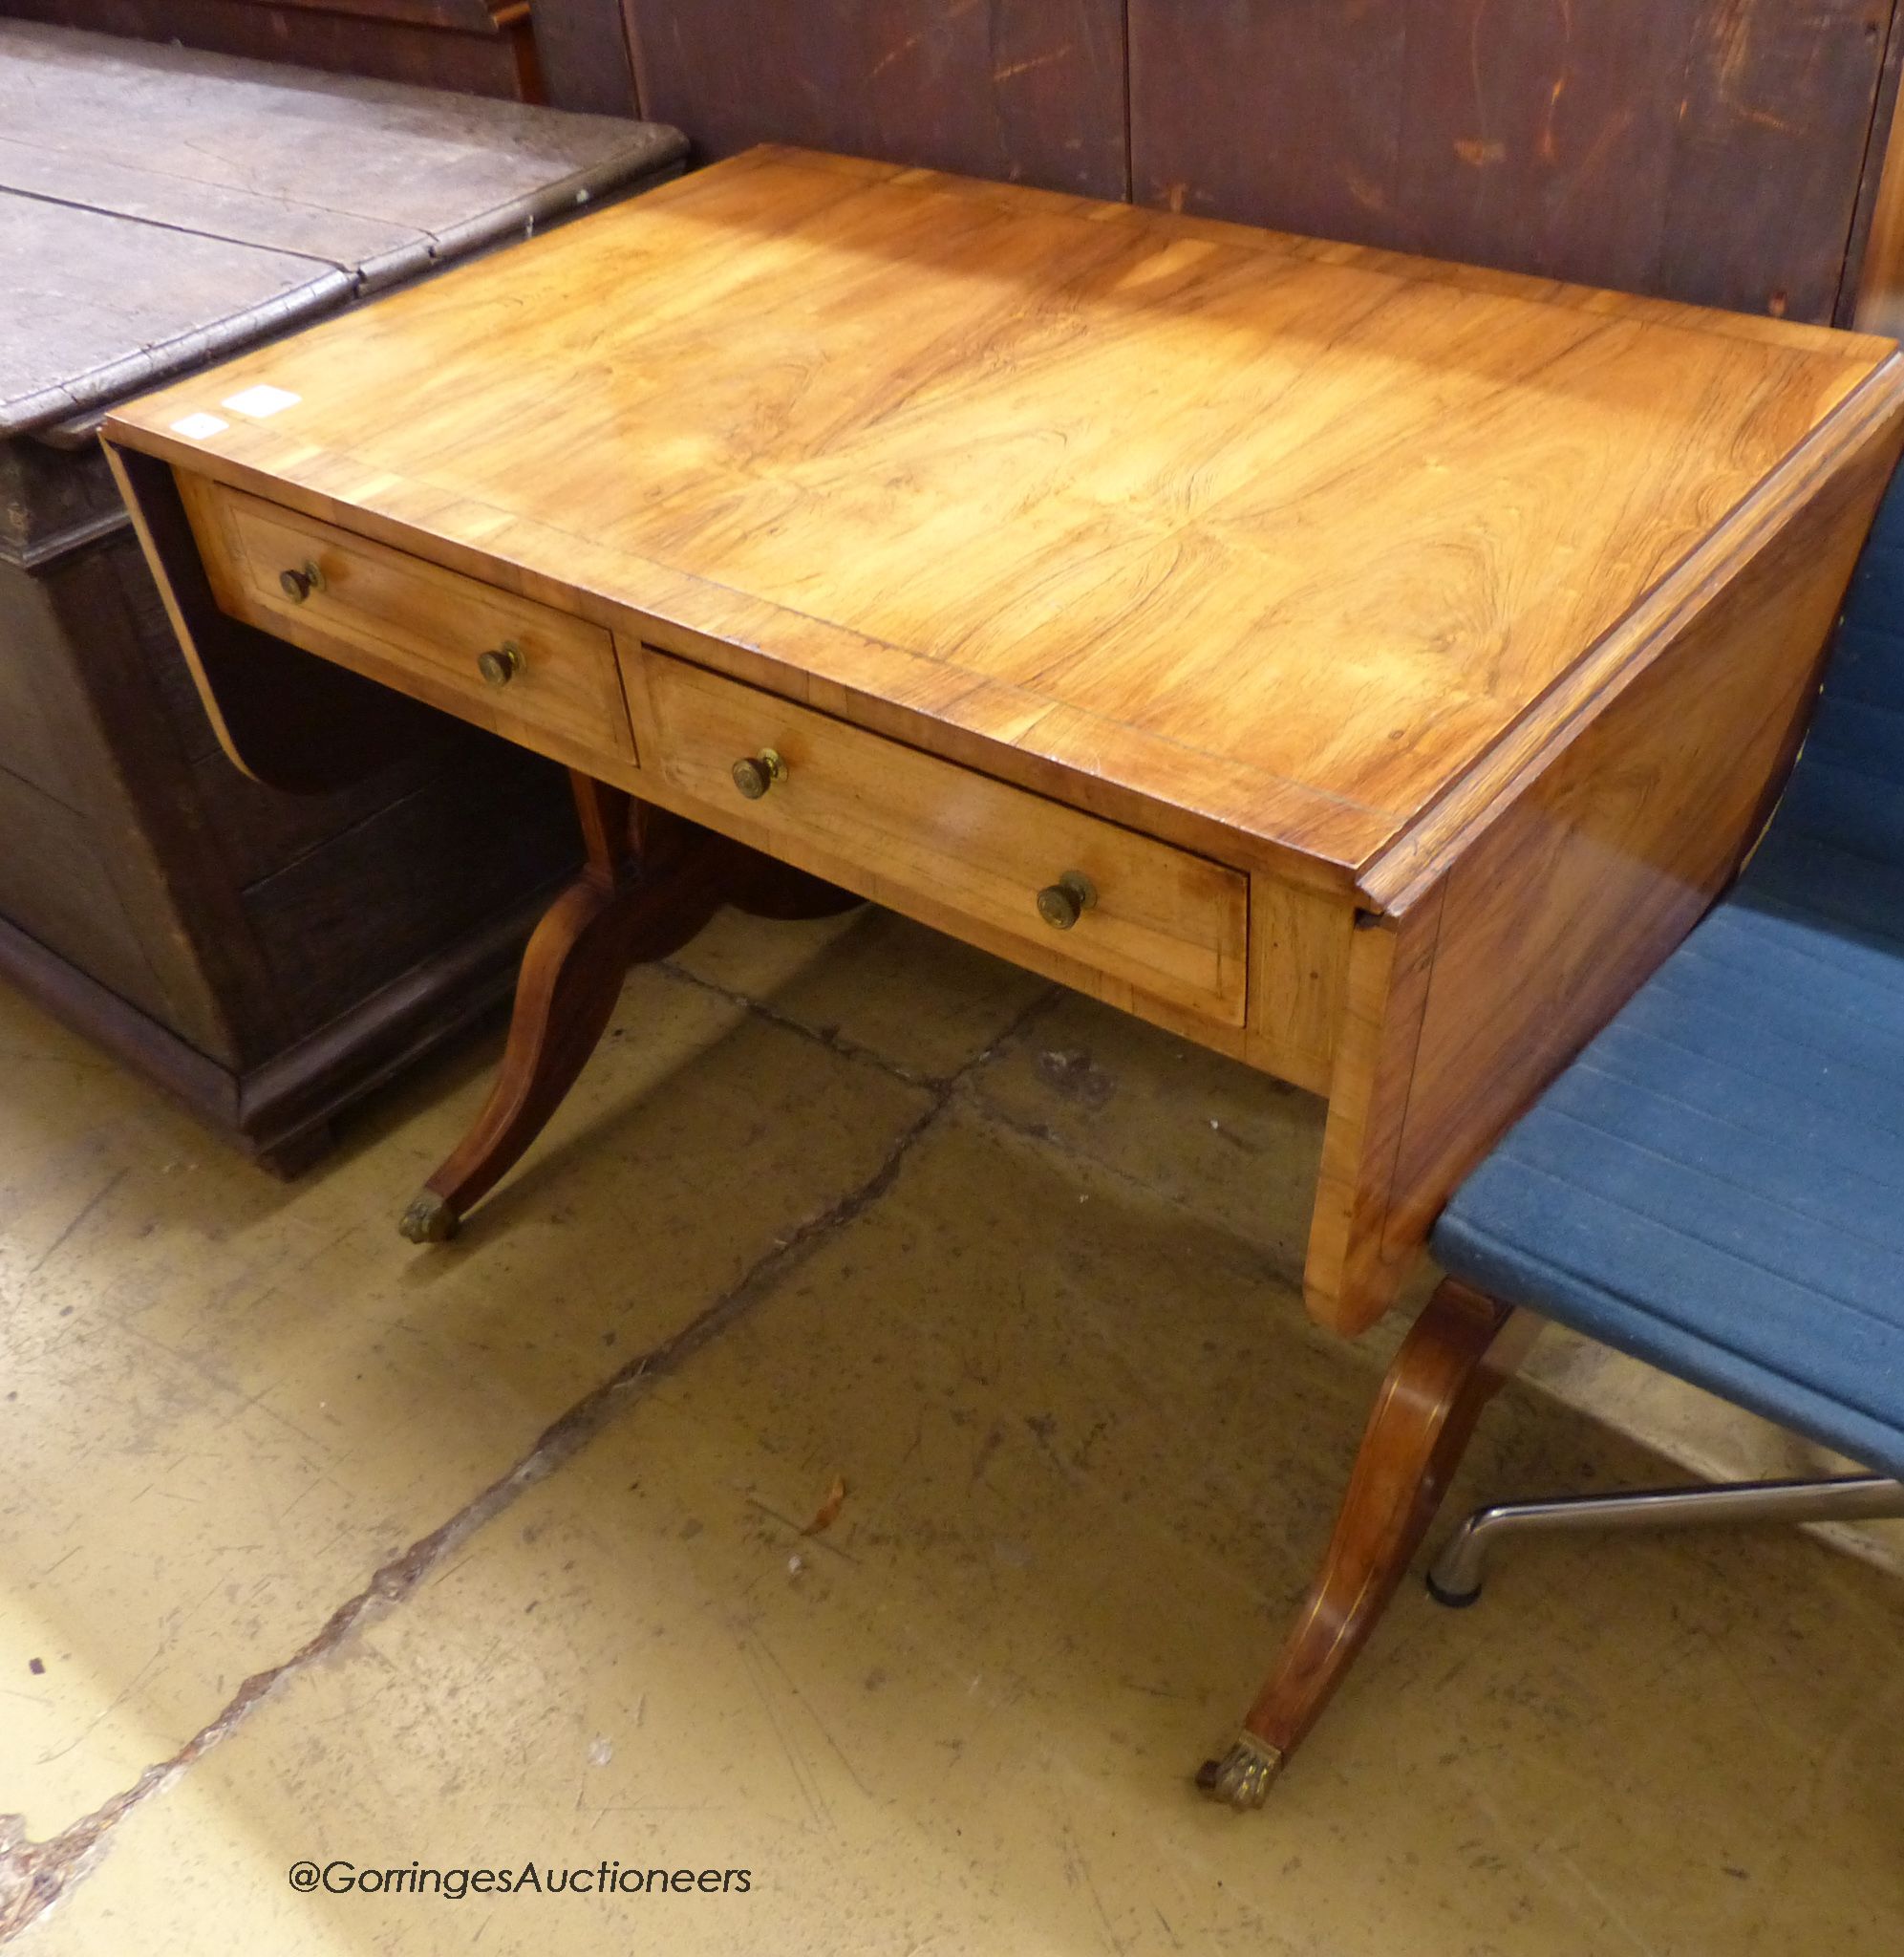 A regency rosewood veneered sofa table. W-92cm, D-60cm, H-74cm.